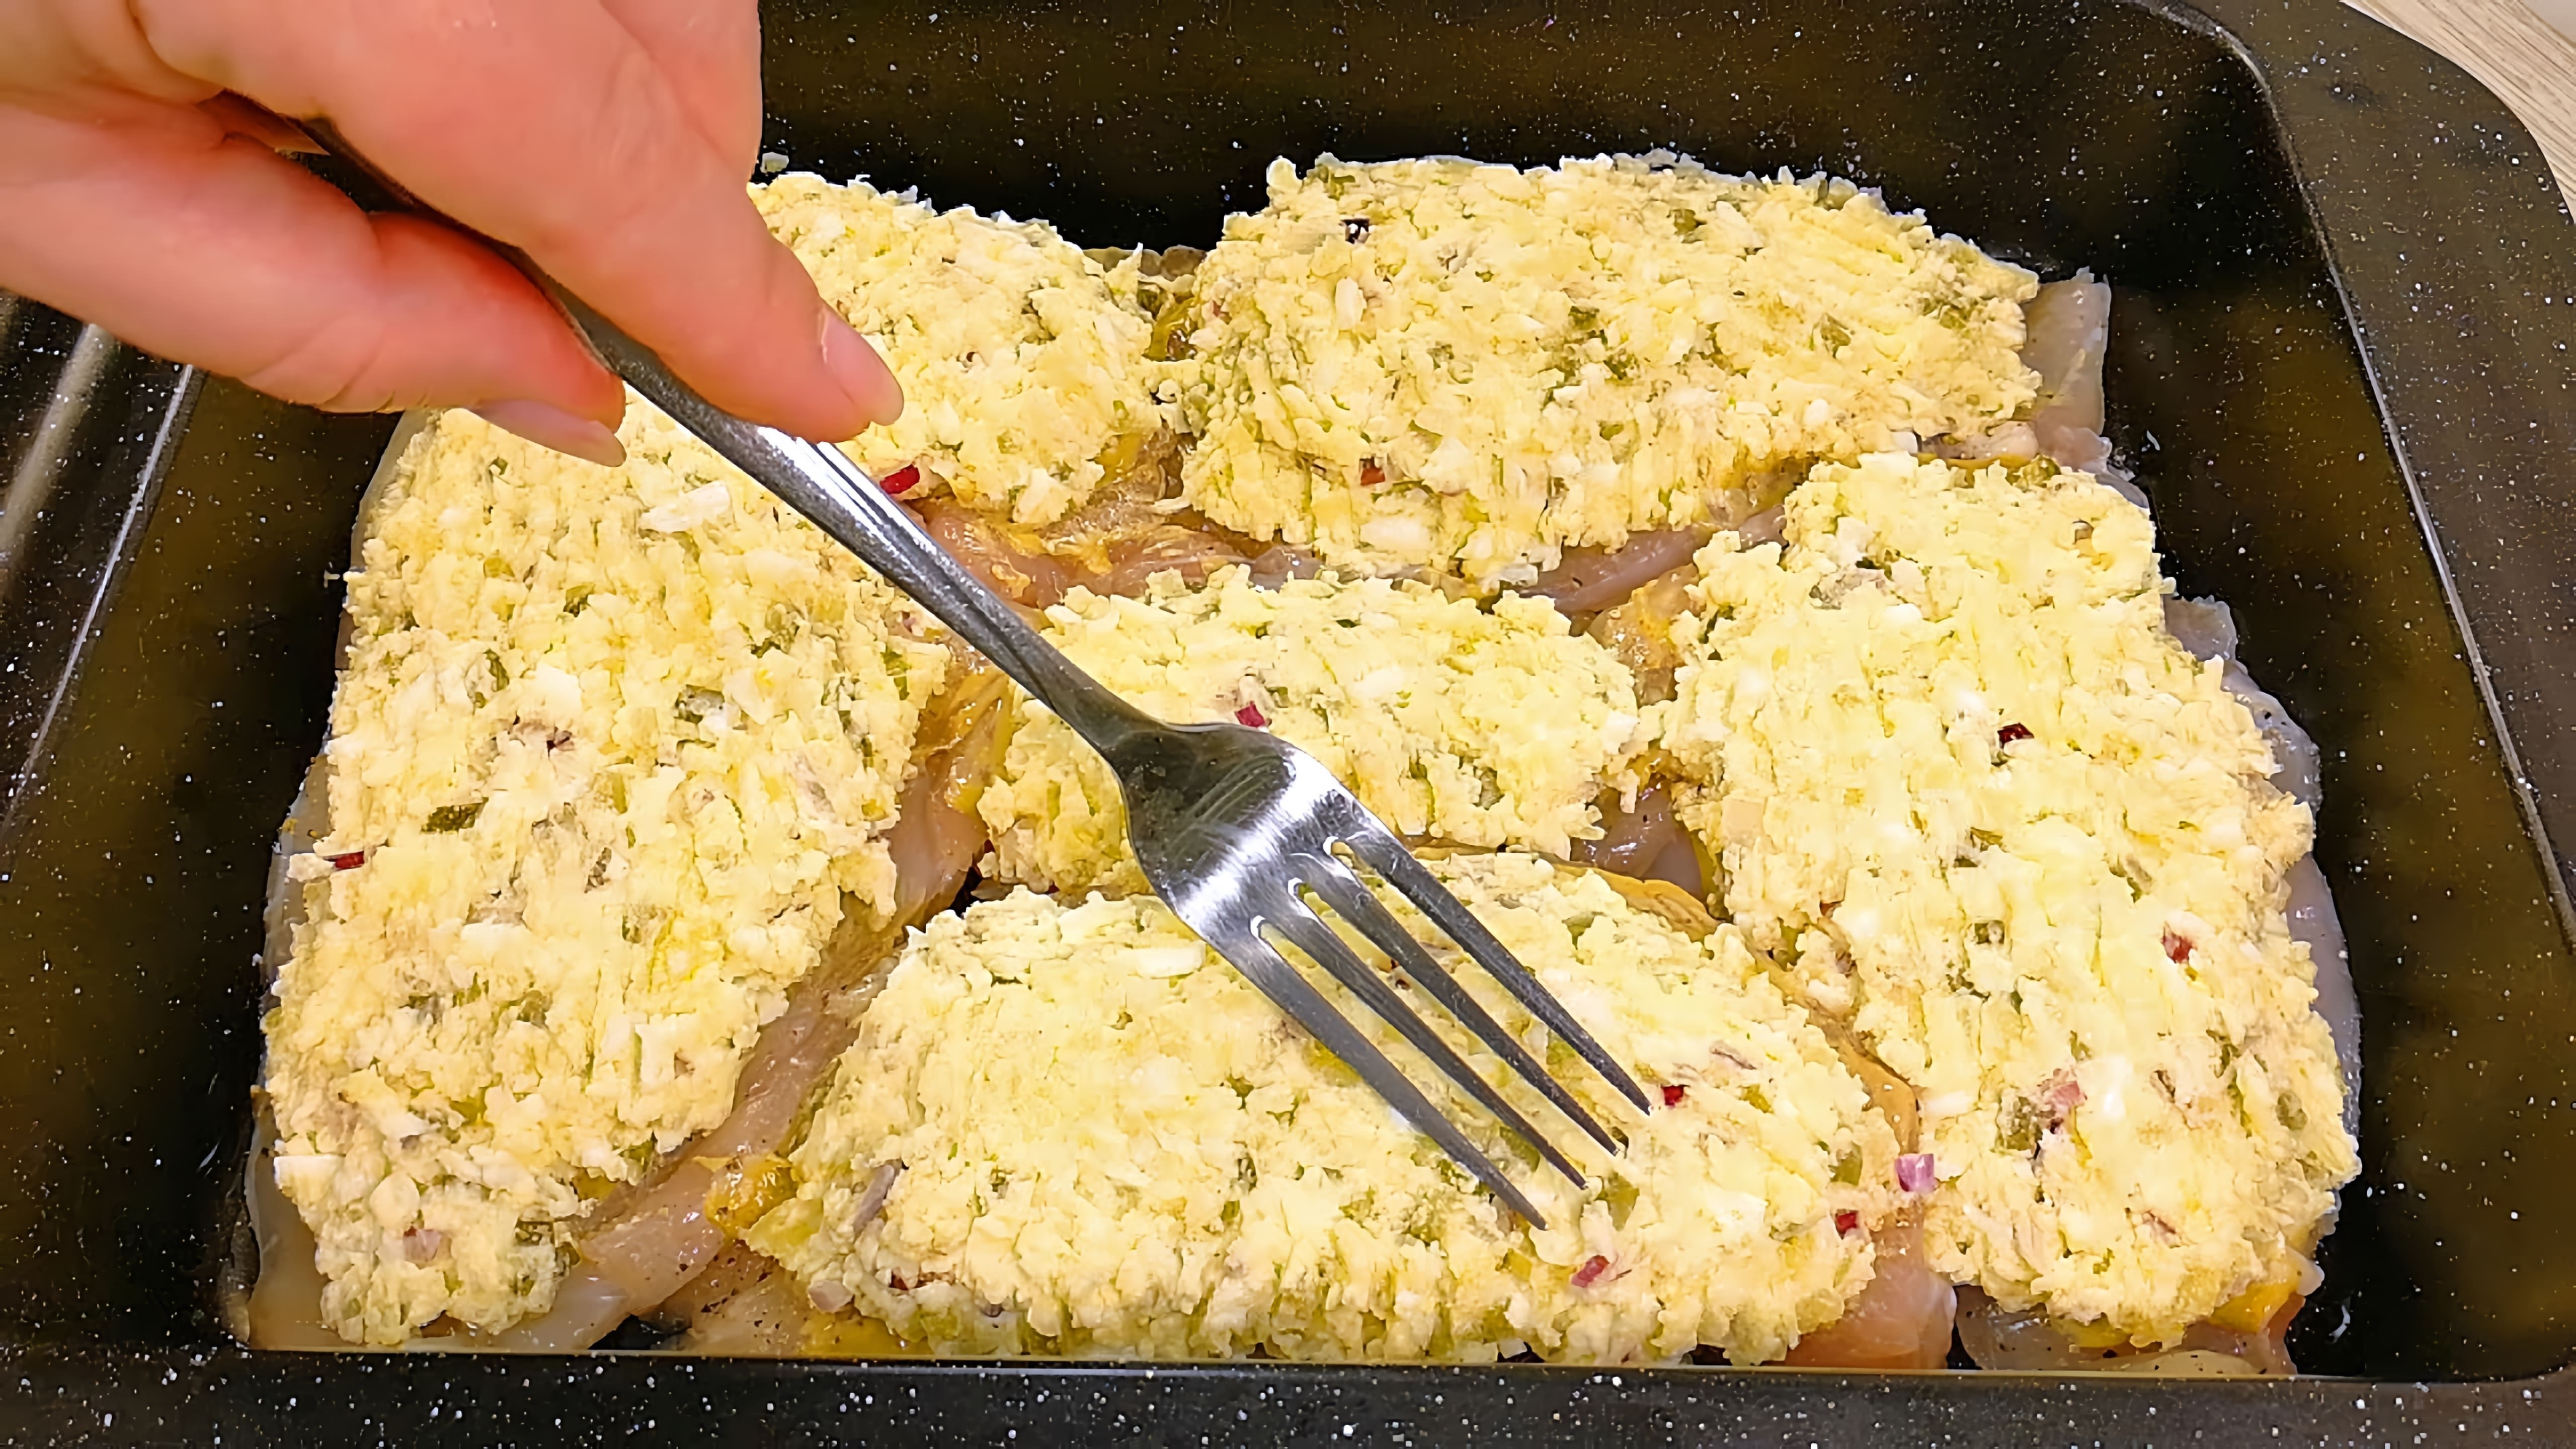 В этом видео демонстрируется процесс приготовления горячего блюда с гарниром